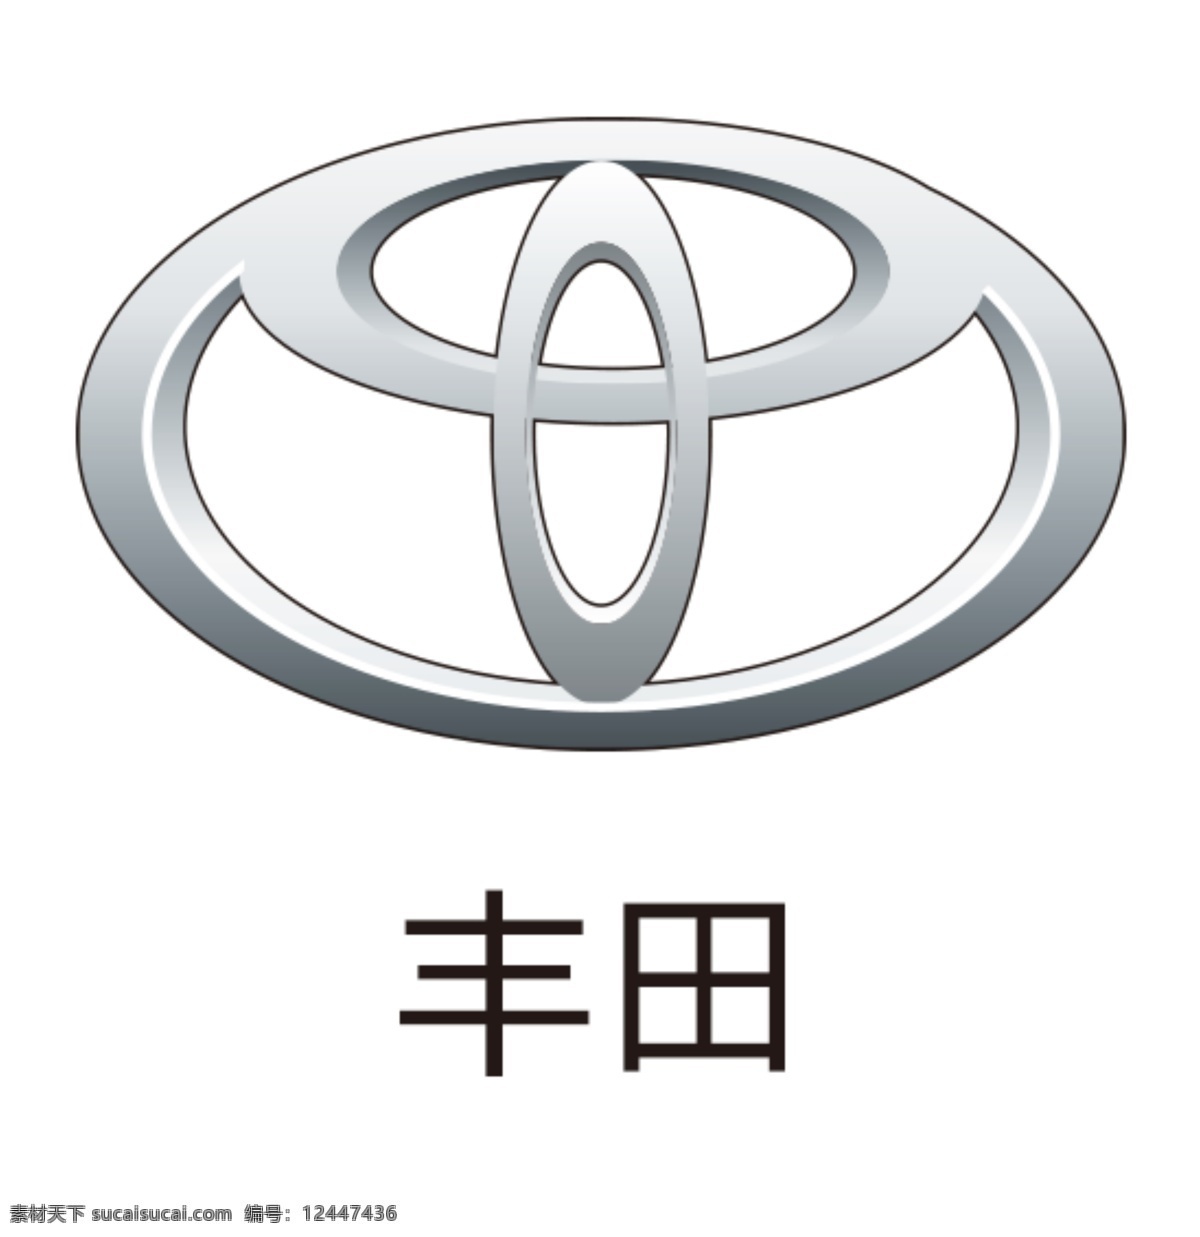 丰田图片 丰田logo 丰田图标 车标 汽车标志 汽车logo 汽车 图标